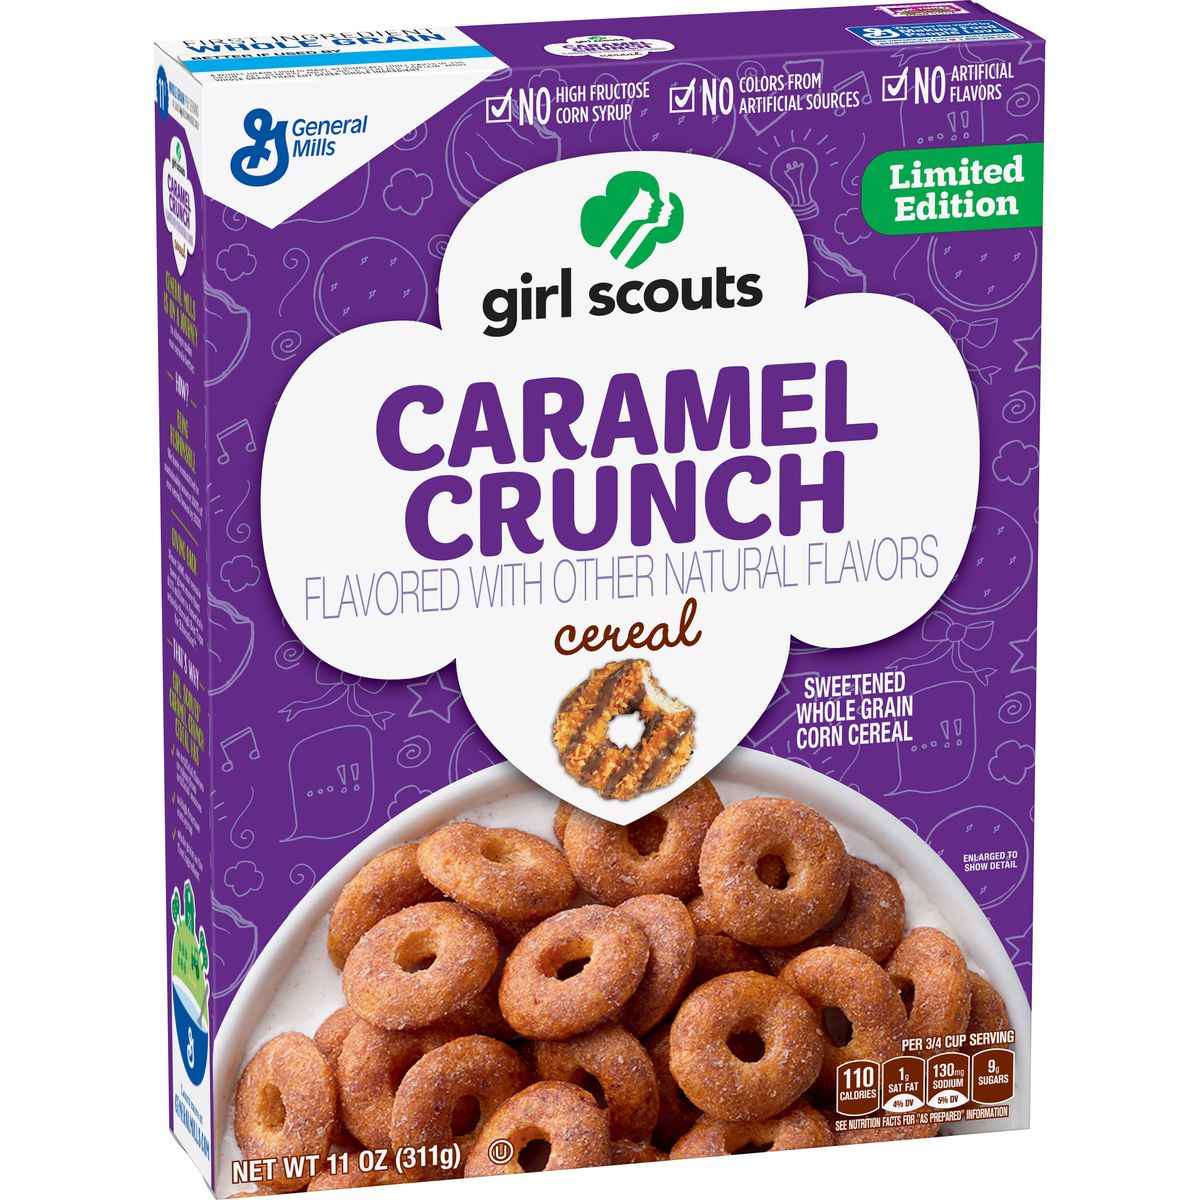 Caramel Crunch cereal